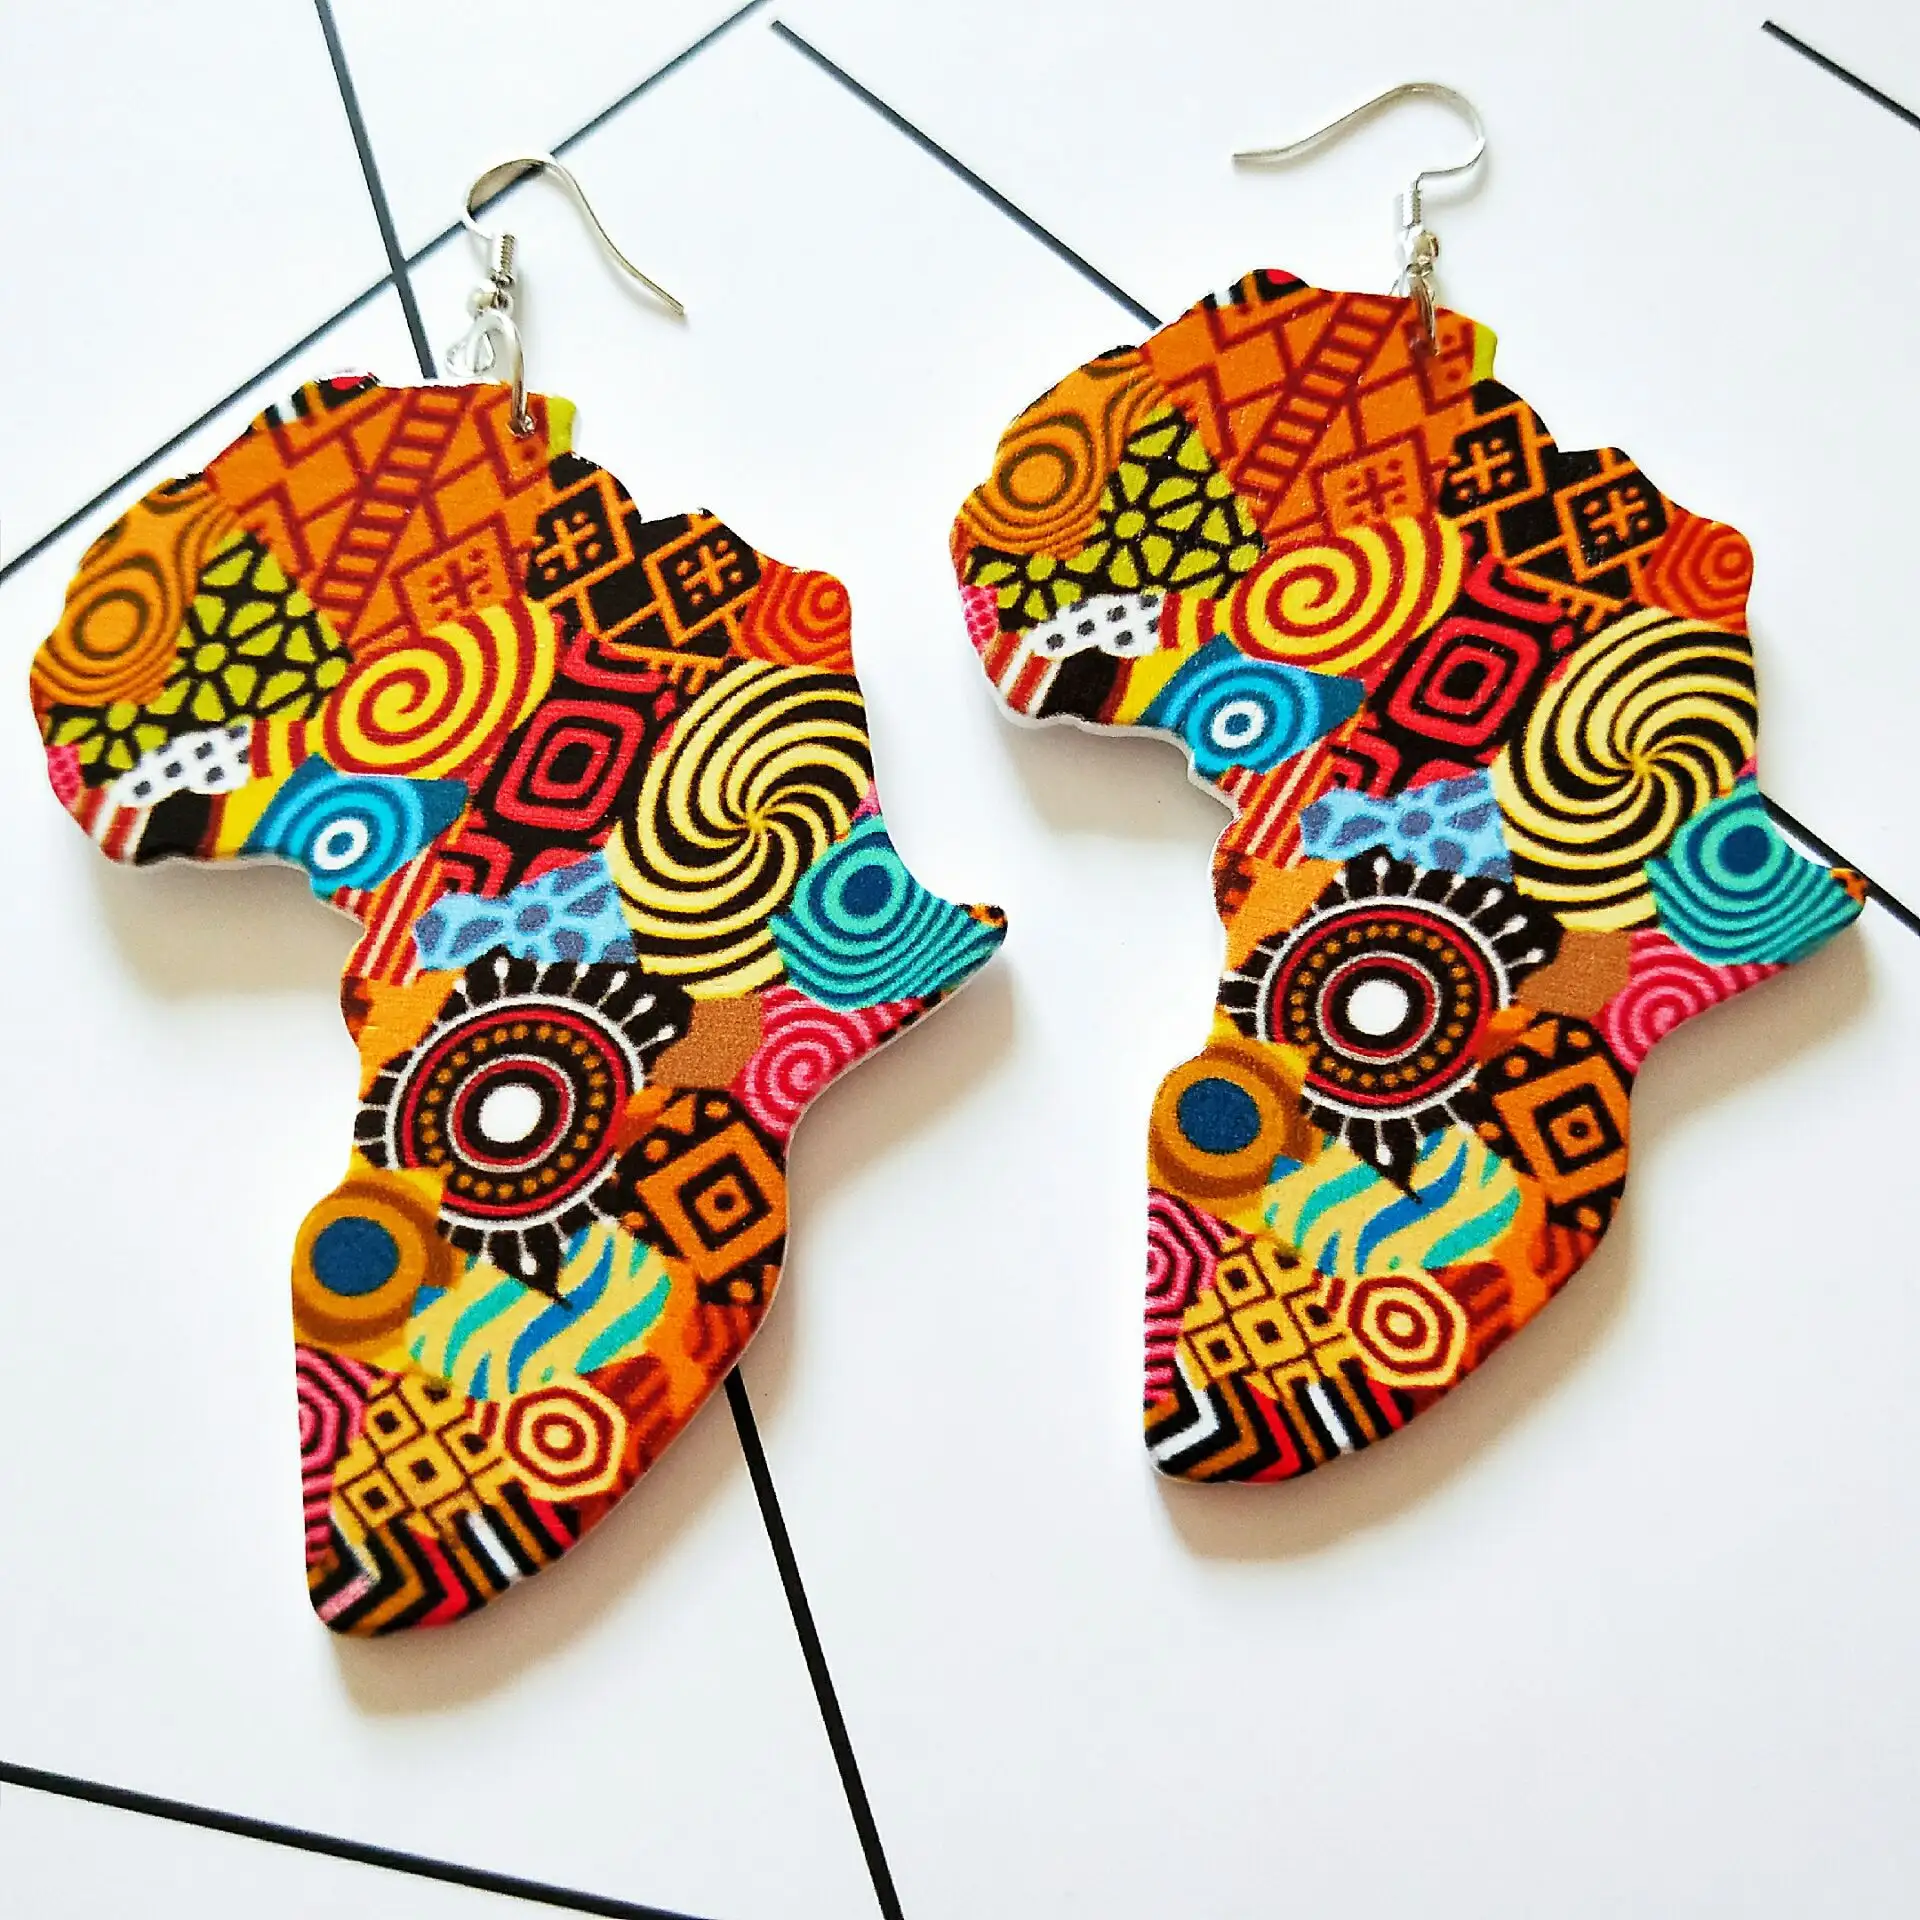 Mode Afrikaanse Sieraden Afrika Kaart Patroon Hout Oorbellen Geometrische Etnische Tribal Afrikaanse Kaart Houten Hout Oorbellen